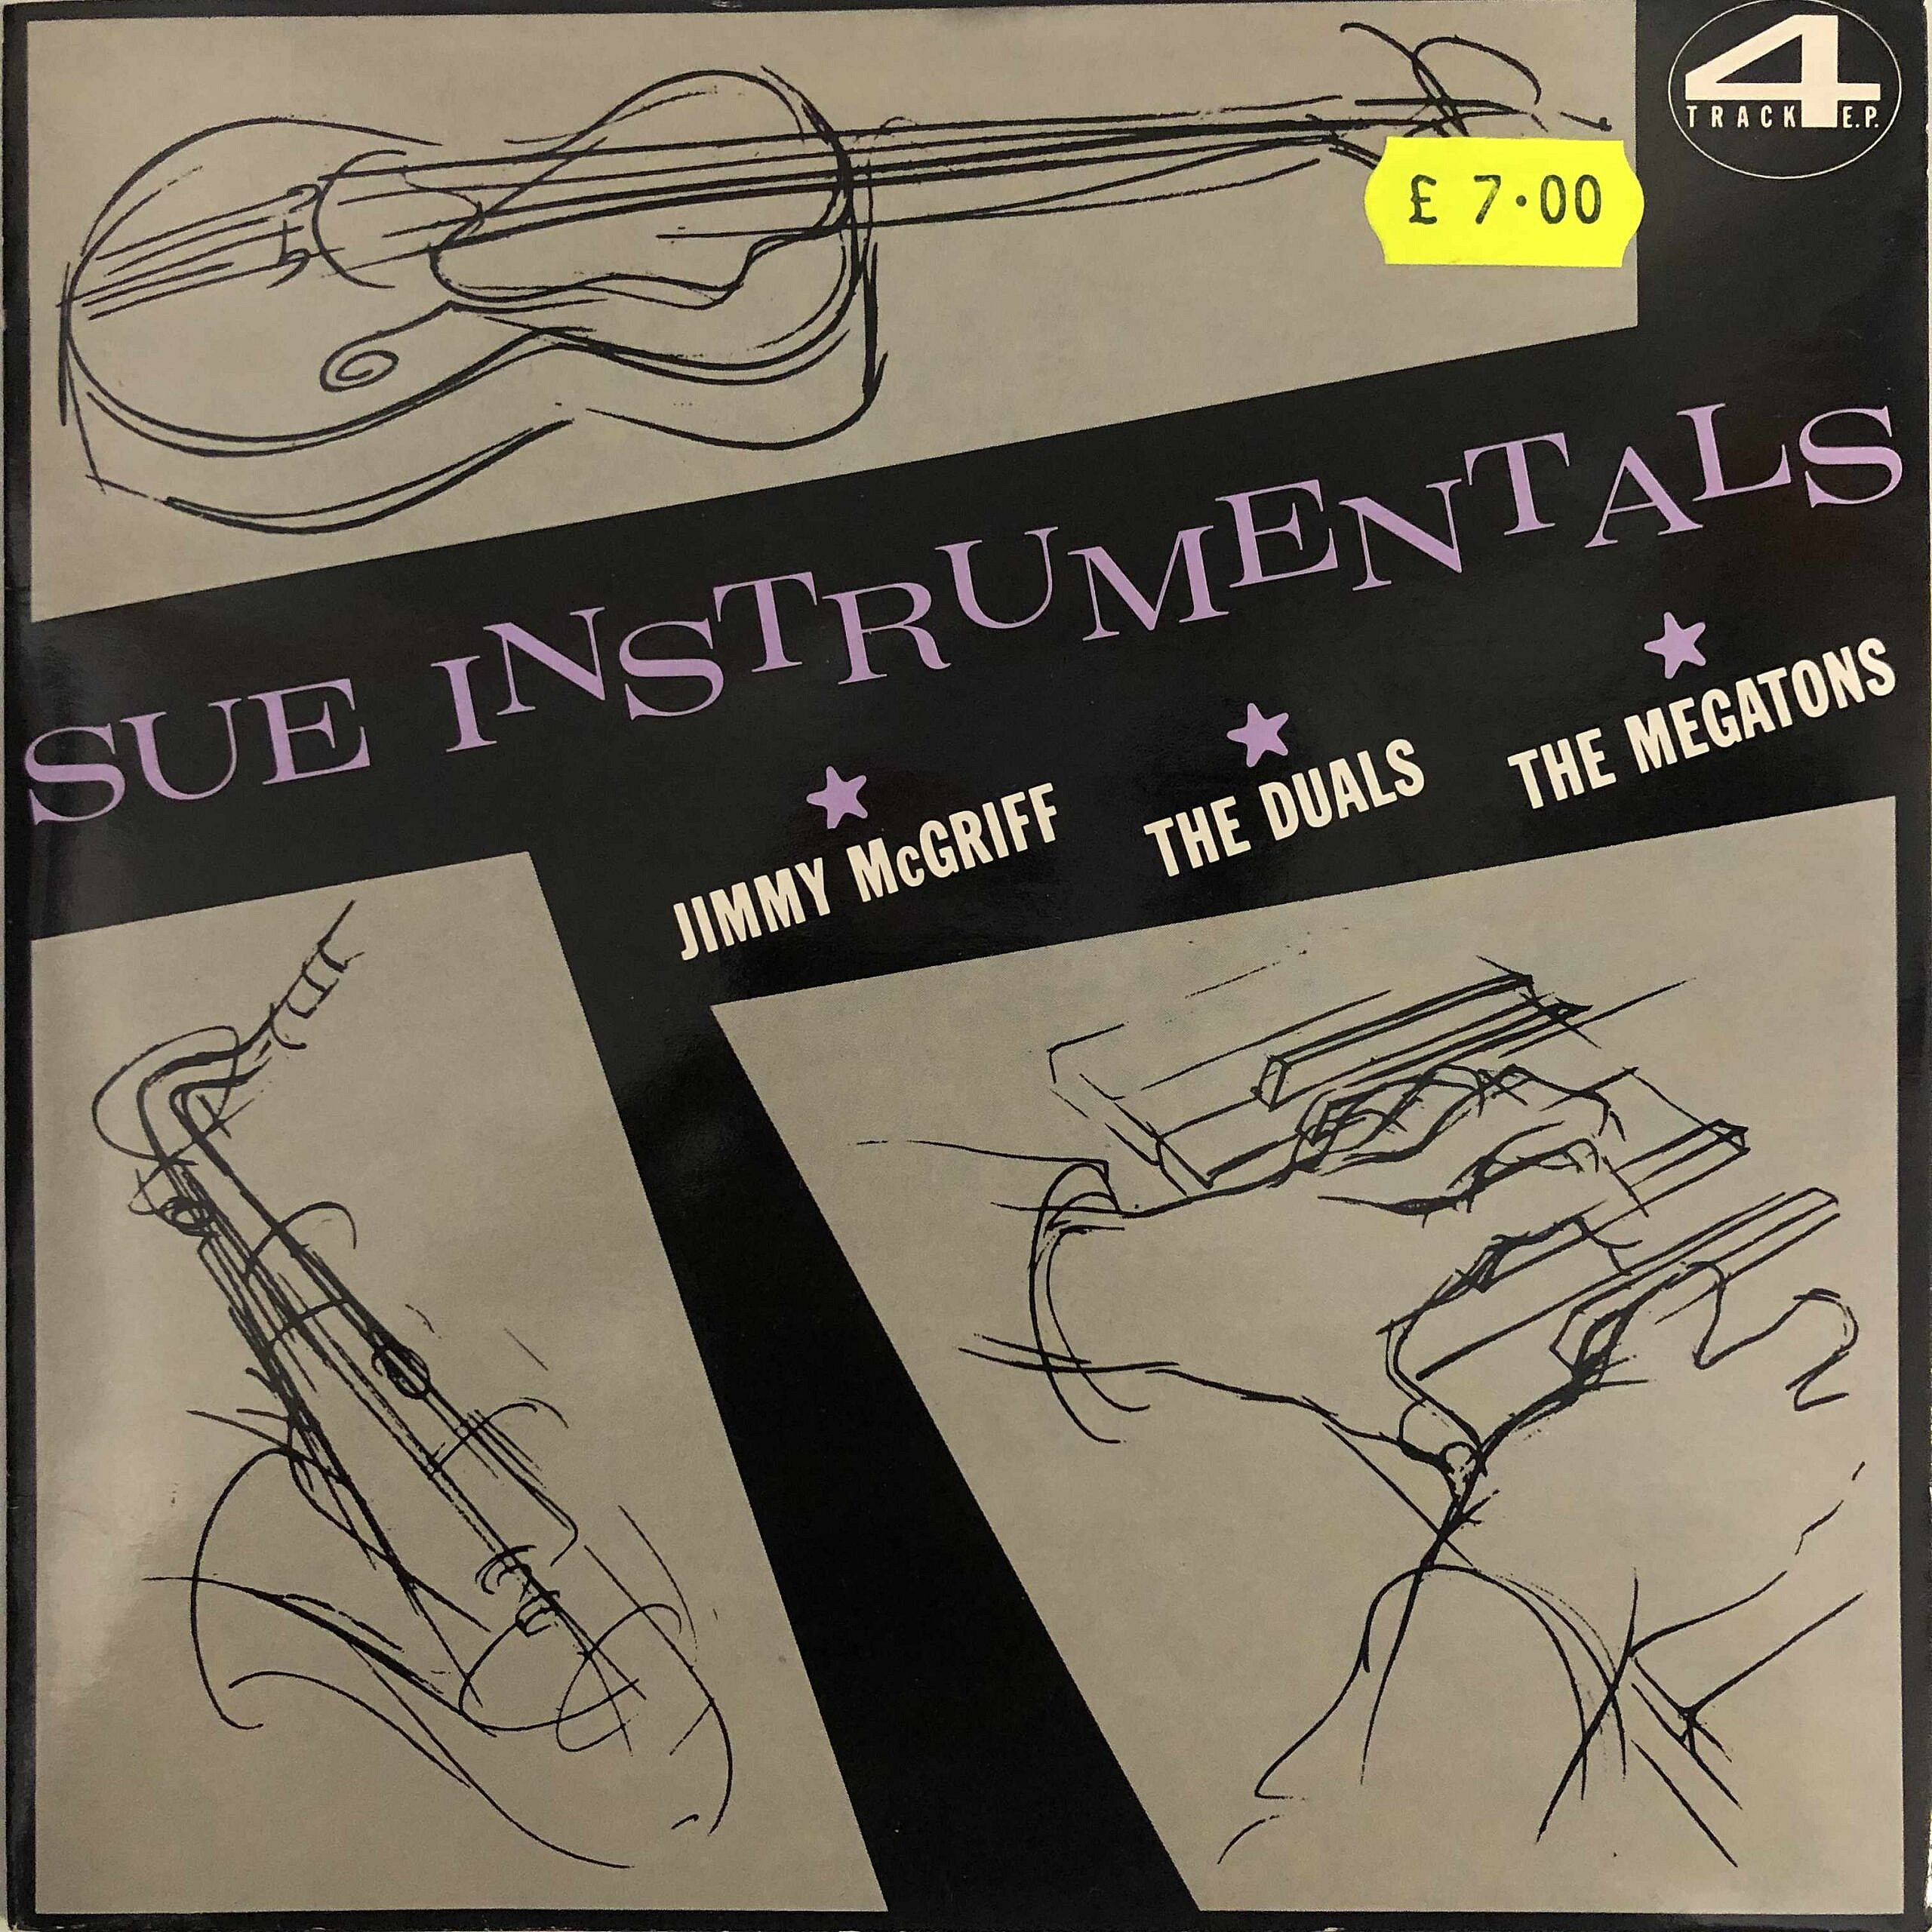 Sue Instrumentals